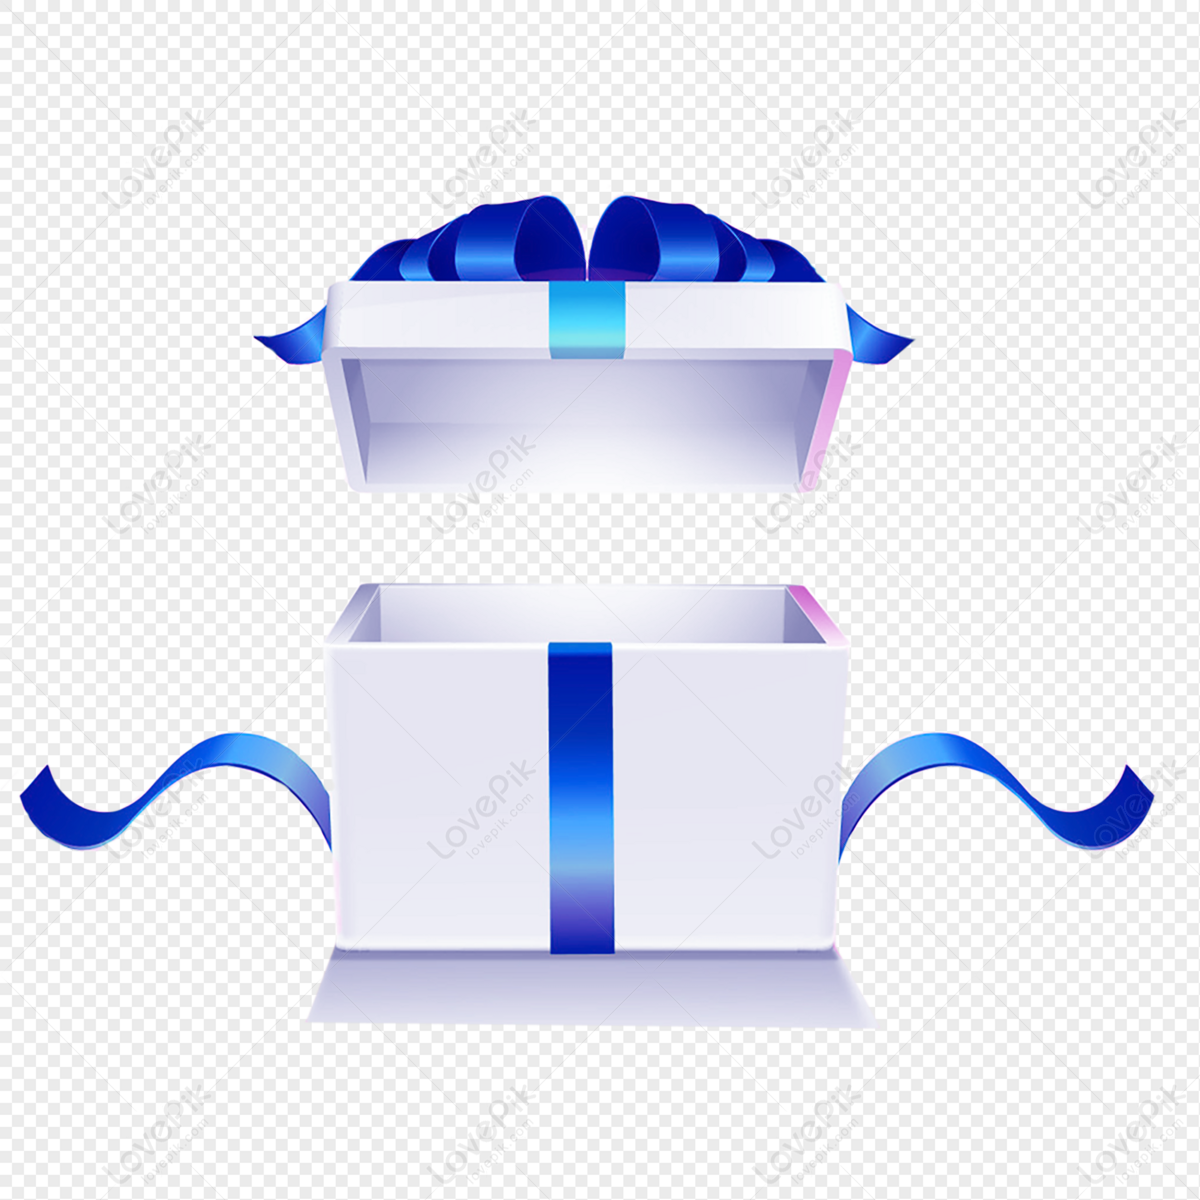 Bạn đang muốn tìm kiếm hình ảnh trang trí đẹp mắt cho thiết kế? Tại sao không sử dụng những hình ảnh trang trí hộp quà đẹp PNG miễn phí tải về từ trang web Lovepik. Chúng sẽ giúp cho sản phẩm của bạn trở nên sinh động và độc đáo hơn bao giờ hết.